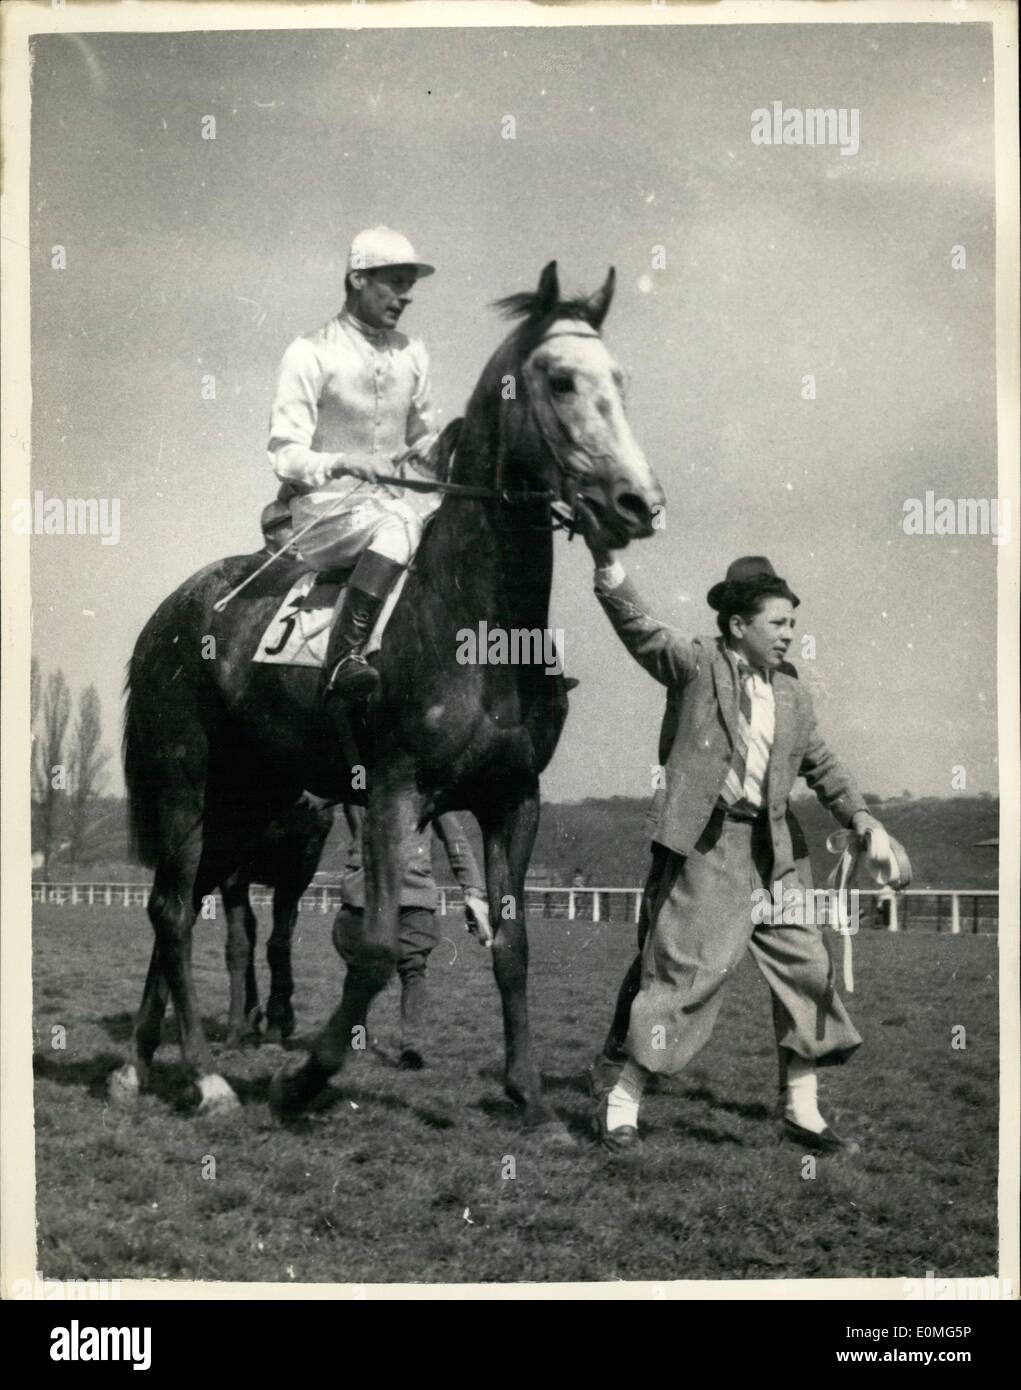 Abril 04, 1955 - El Capitán Townsend va para una carrera y gana: Grupo capitán Peter Townsend ayer tomó parte en una carrera de caballos Foto de stock